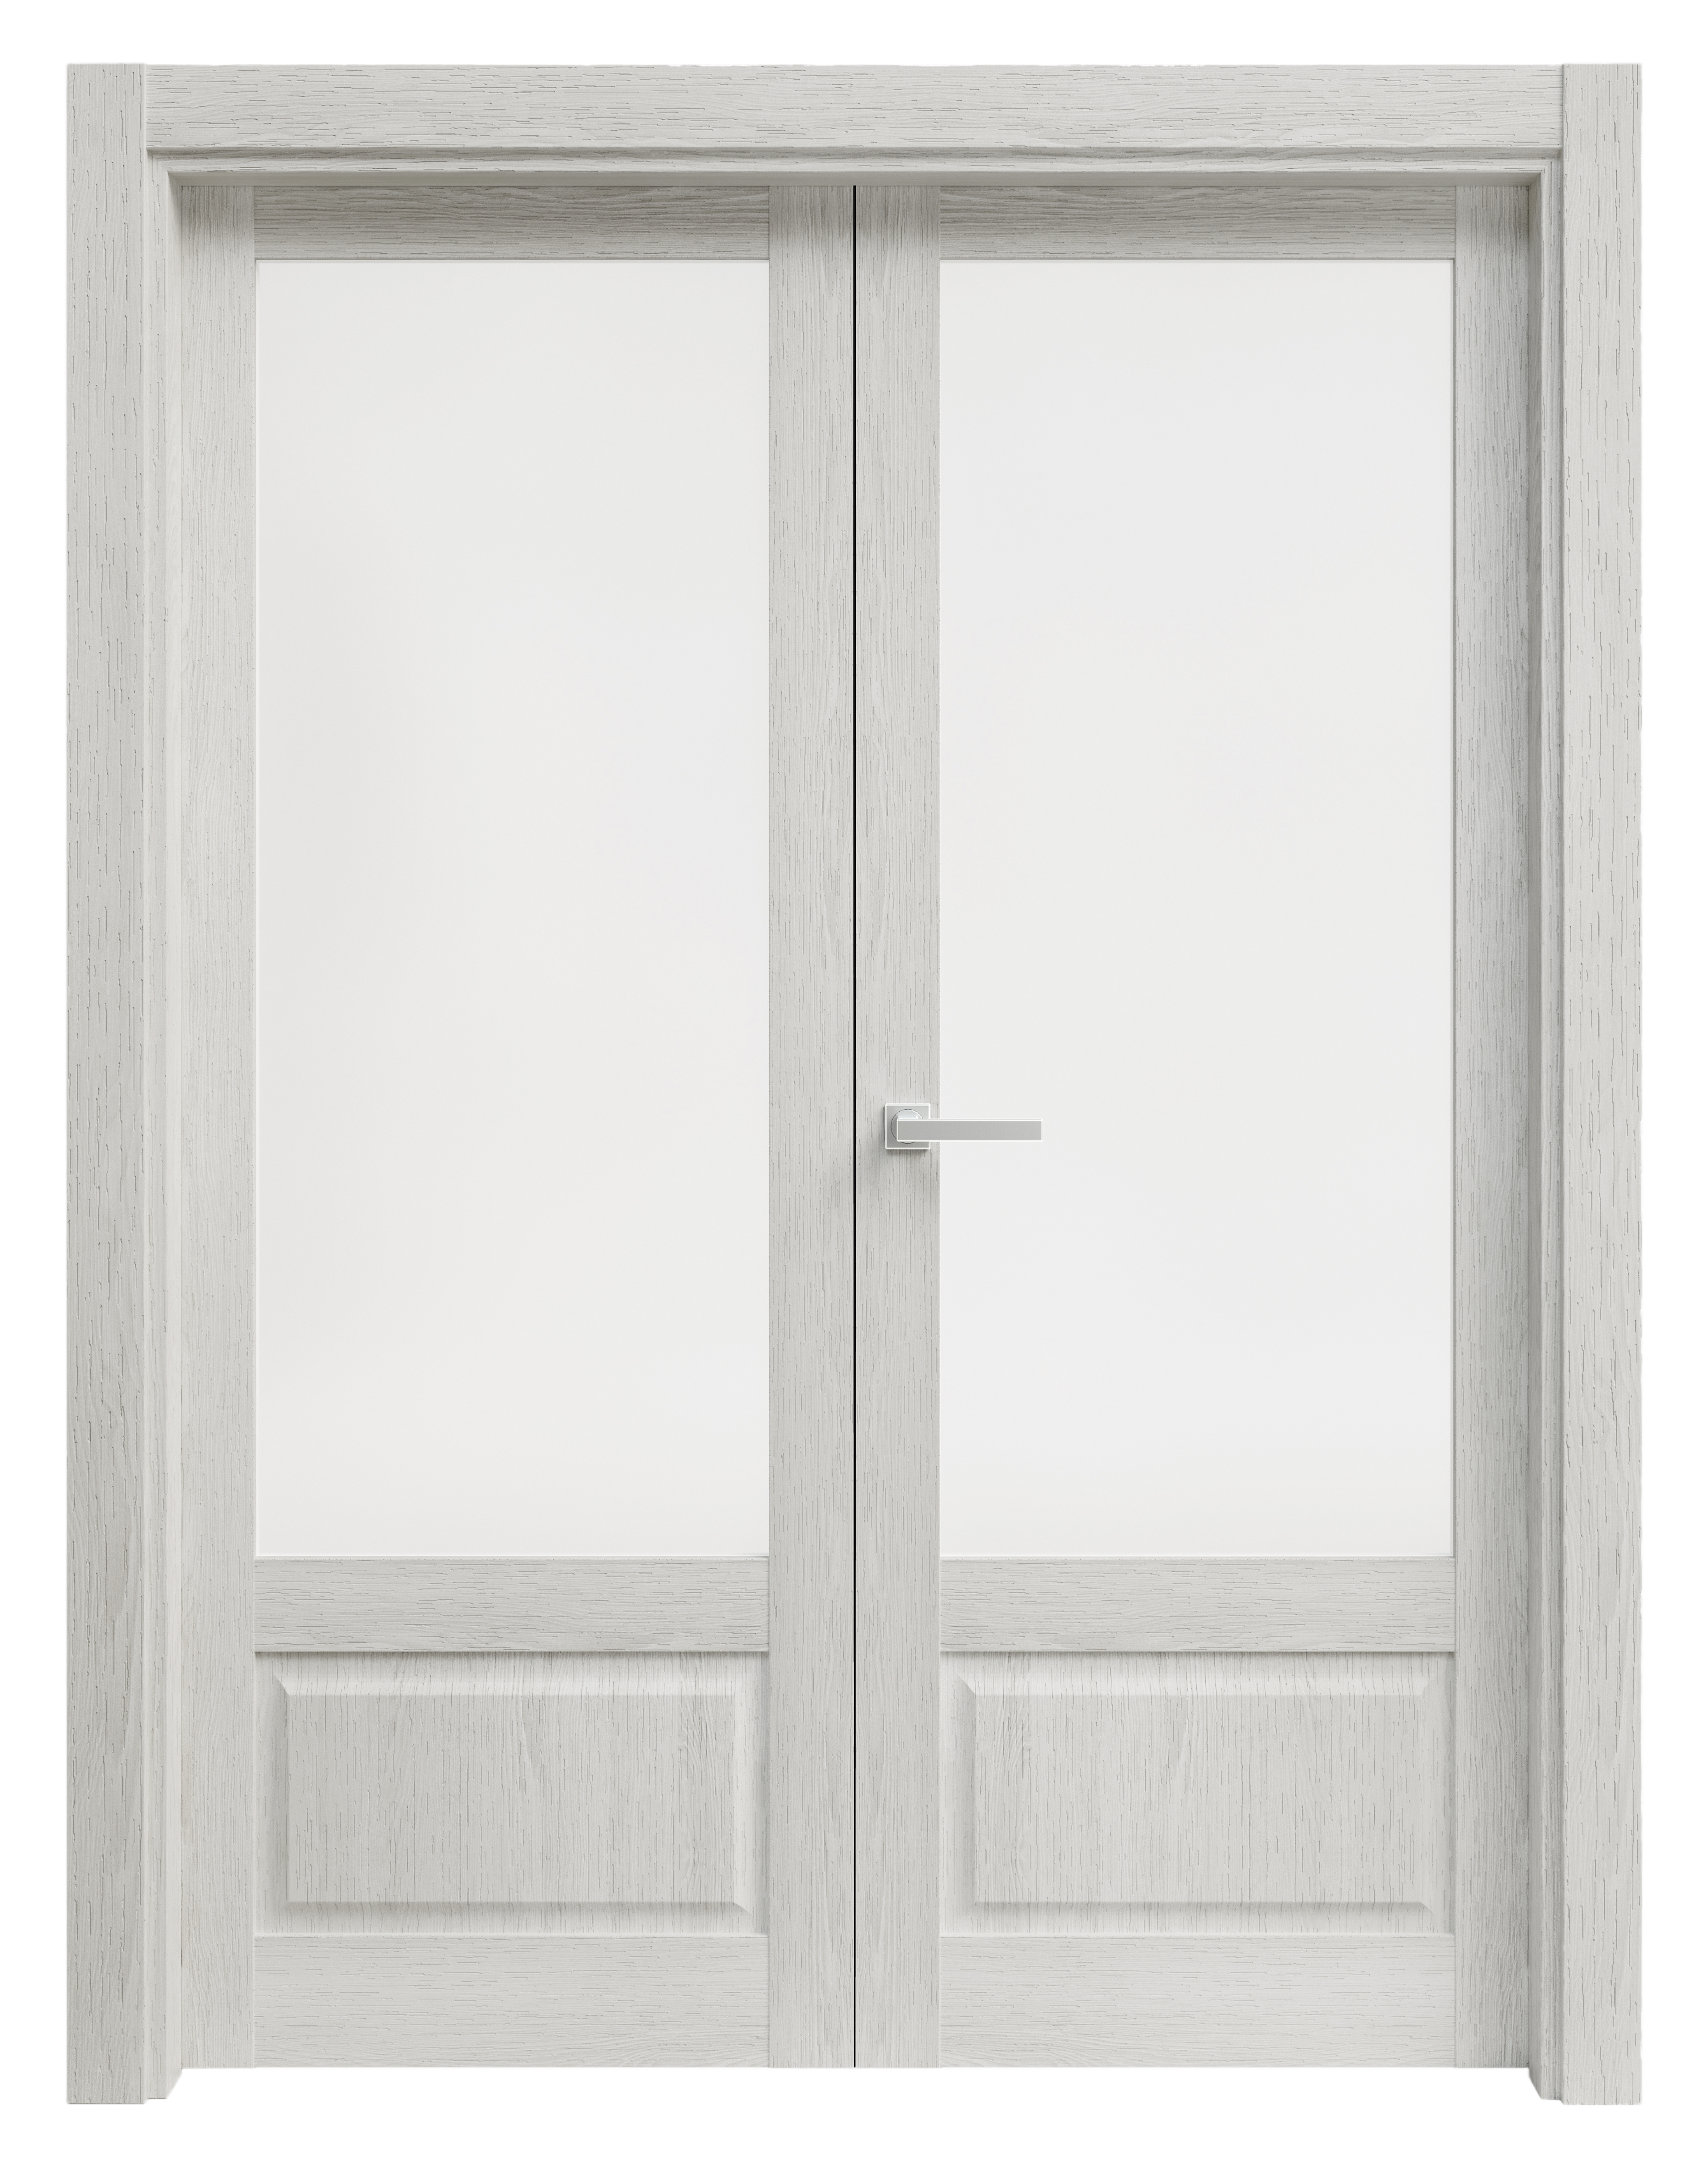 Puerta abatible sofia blanca line plus con cristal blanco izquierda de 145 c